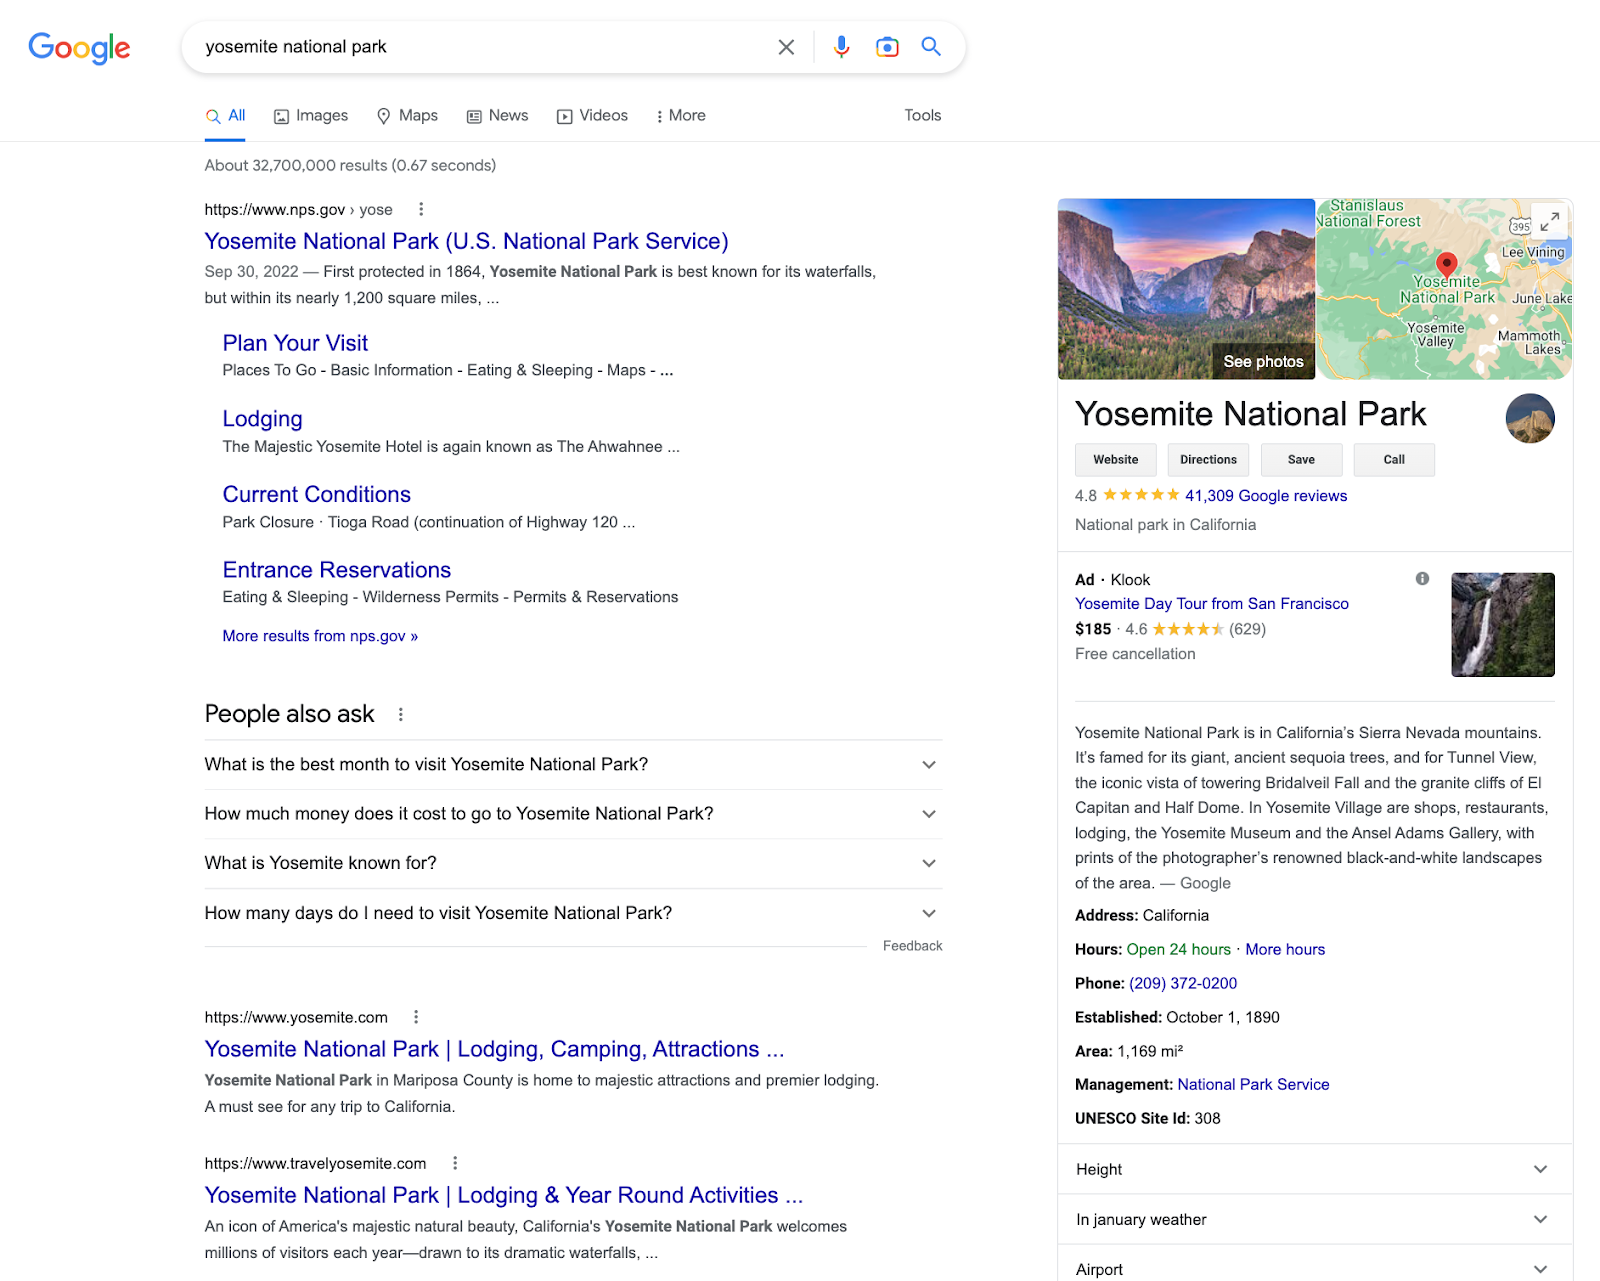 Скриншот для поискового запроса «Национальный парк Йосемити» в Google